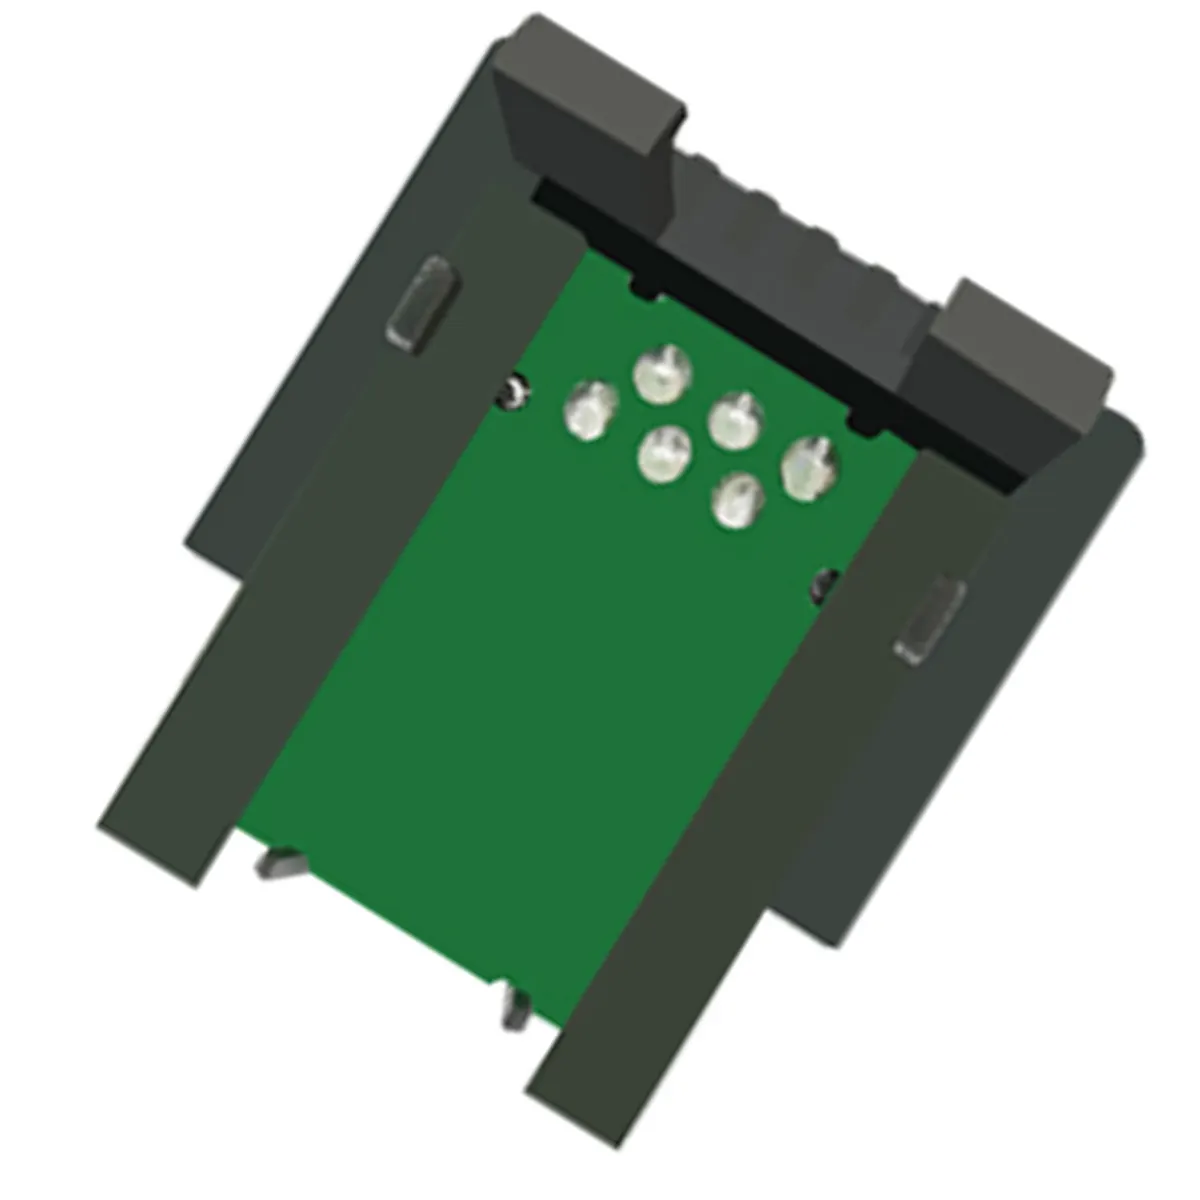 OKI DATA B720 칩용 칩 레이저 토너 카트리지 스마트 블랙 토너 칩/OKI용 블랙 정품